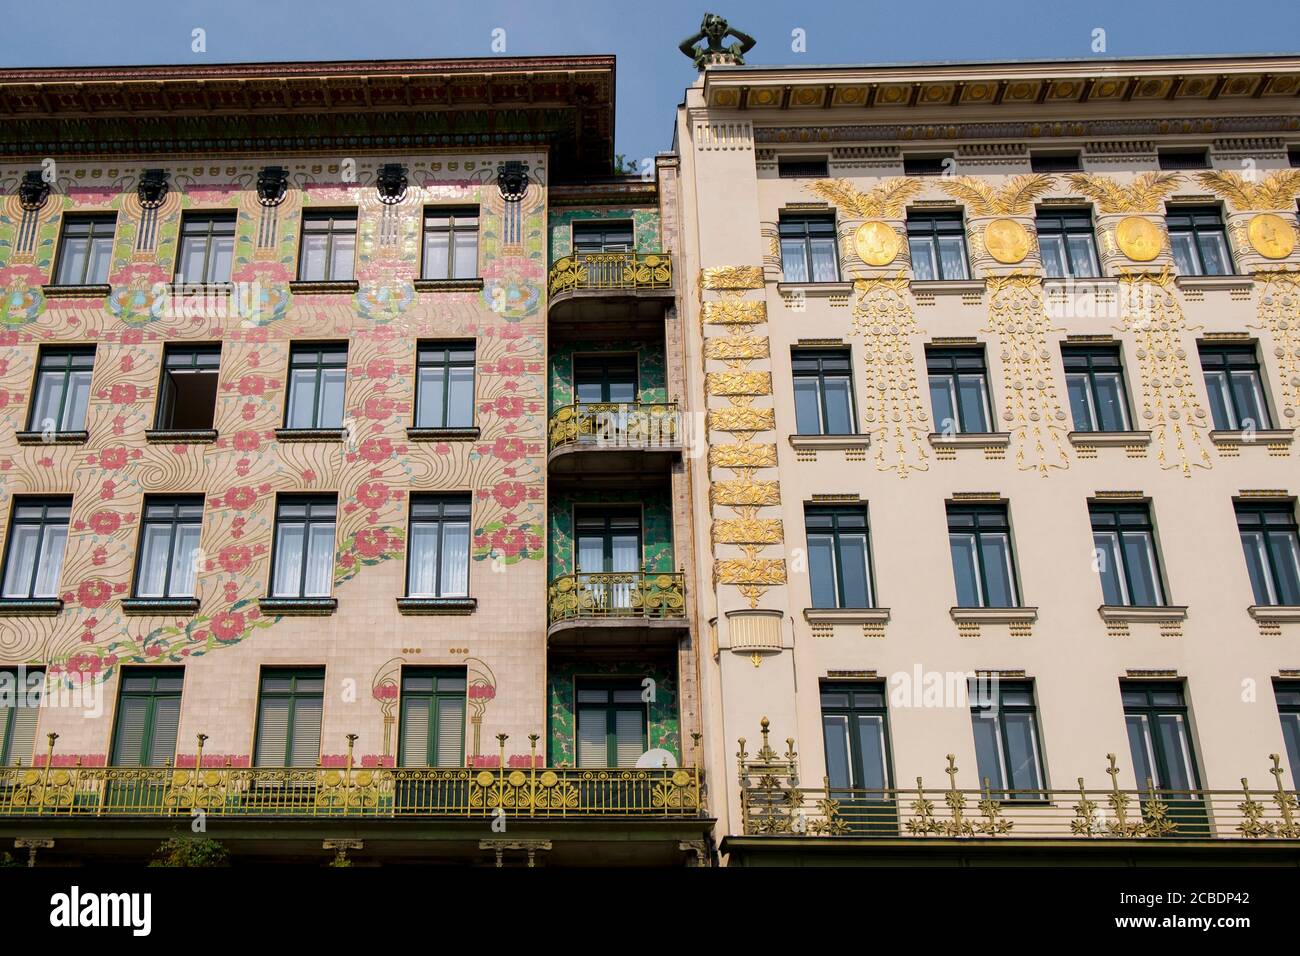 Facciata esterna con vista sulla facciata in stile Art Nouveau in oro fiorito degli appartamenti Majolikahaus, disegnati dall'architetto otto Wagner. A Vienna, Aust Foto Stock